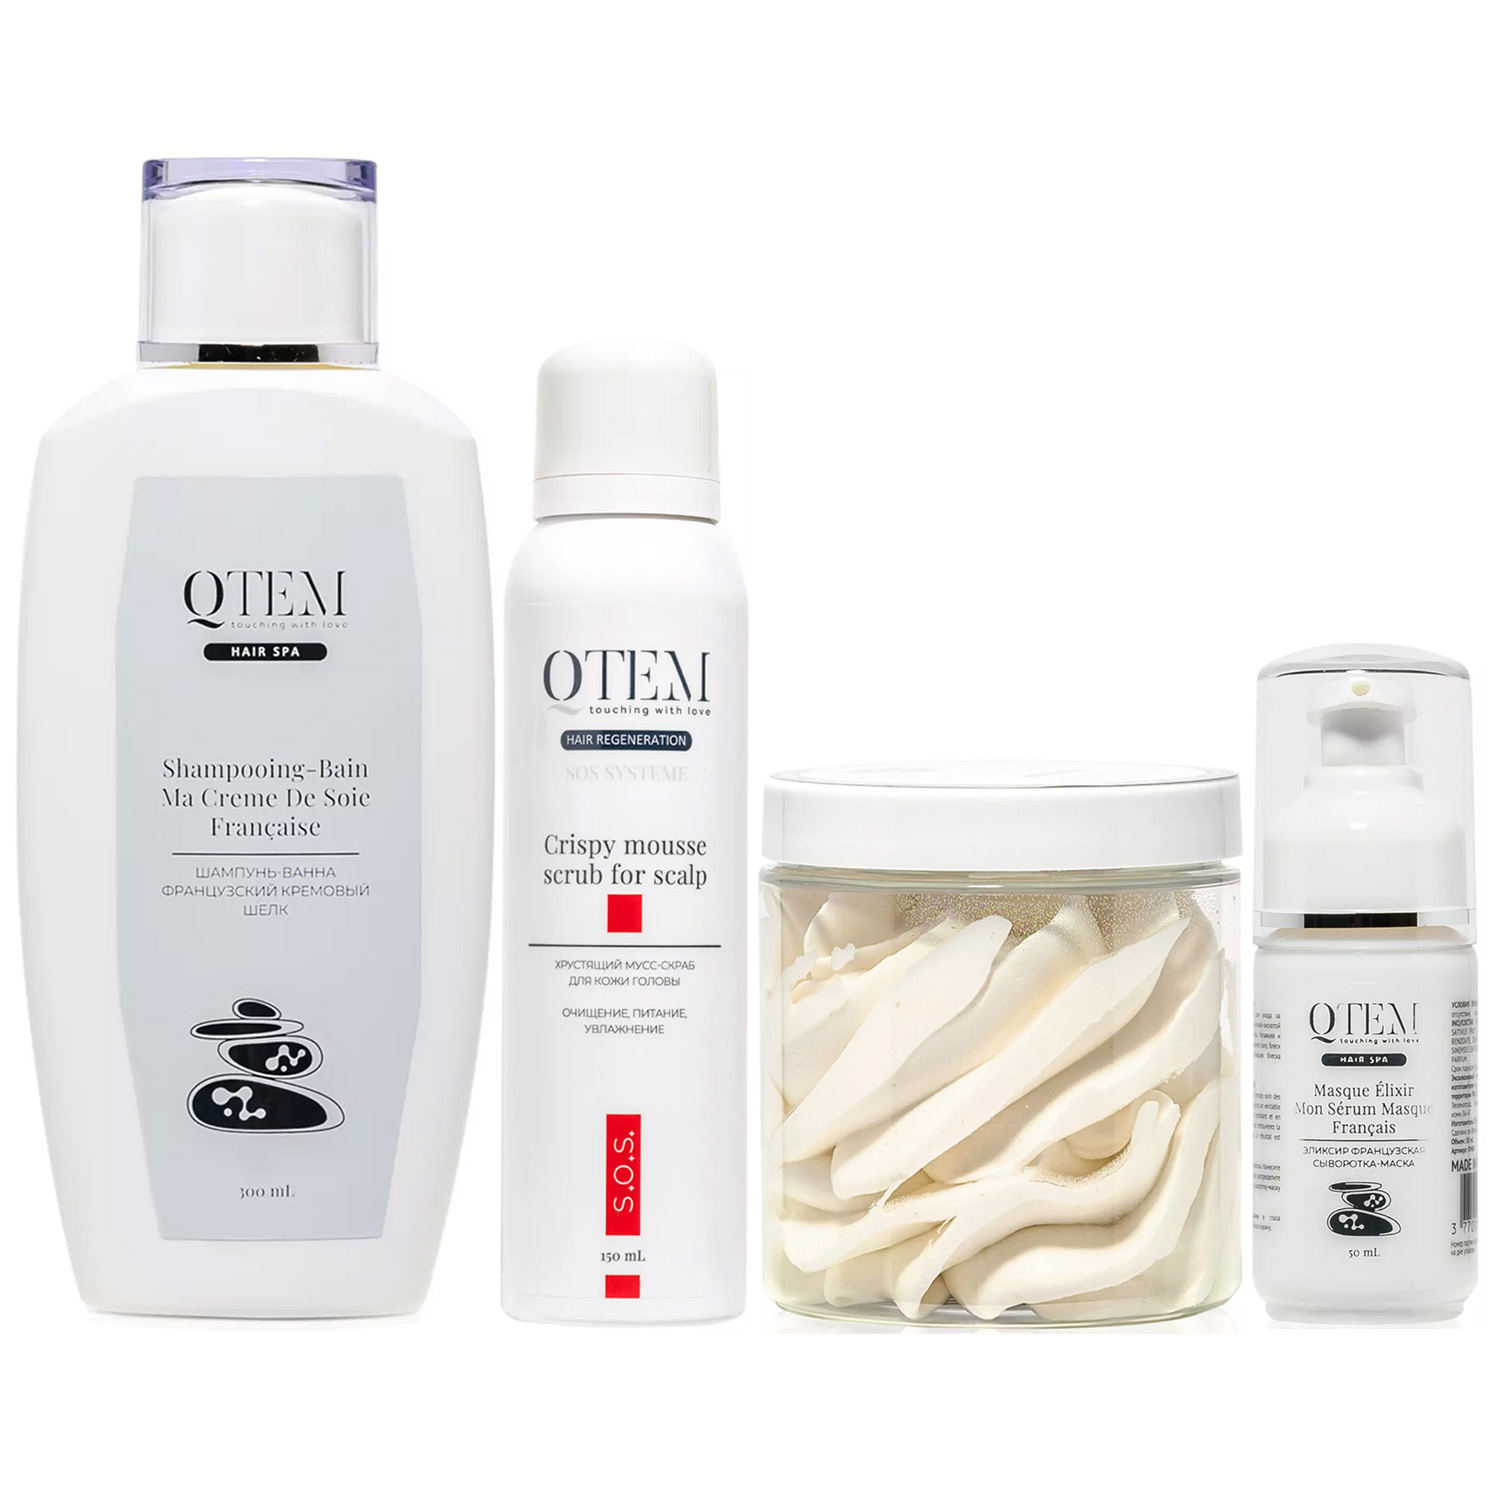 Qtem Набор средств для ухода за сухими уставшими волосами, 4 средства (Qtem, Hair Spa) набор для восстановления прямых волос 4 шт шампунь маска липидная маска несмываемая сыворотка